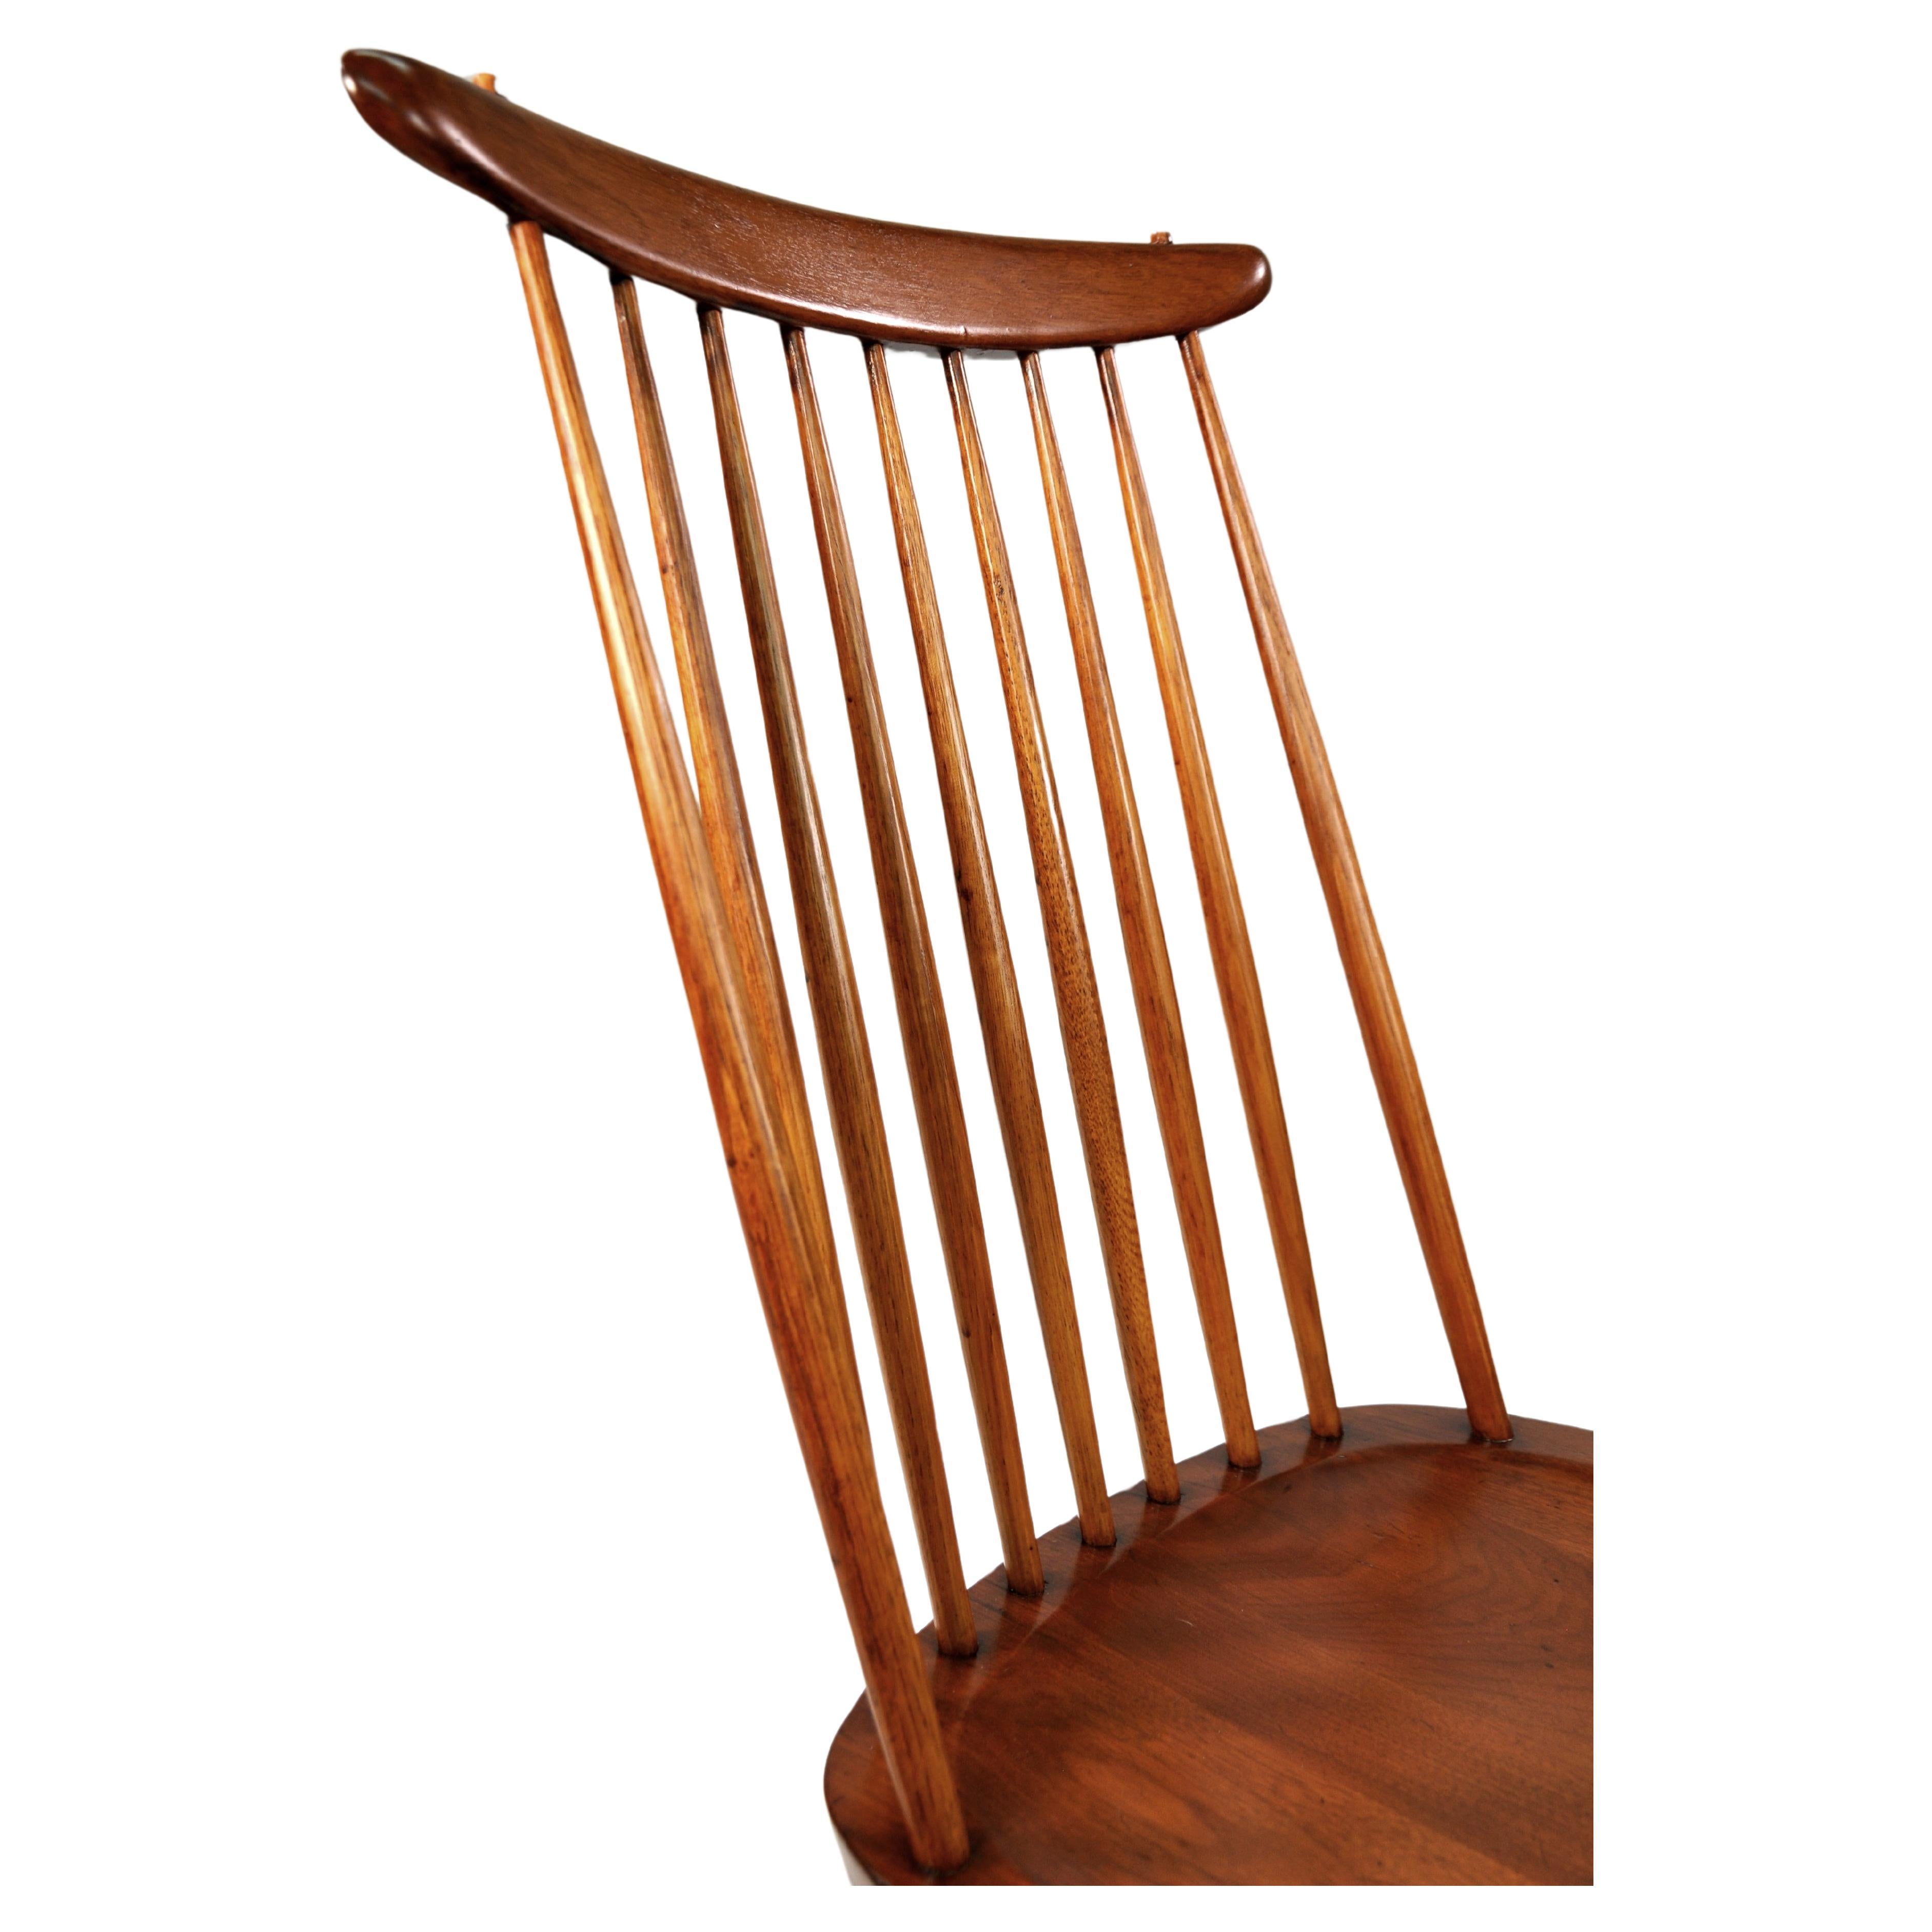 Rare et ancien modèle 271 ou New Chair, l'emblématique chaise Windsor à dossier en fuseau réimaginée par le maître menuisier américano-japonais George Nakashima en 1956. Bois de laurier des Indes orientales dans la finition originale Sundra avec des